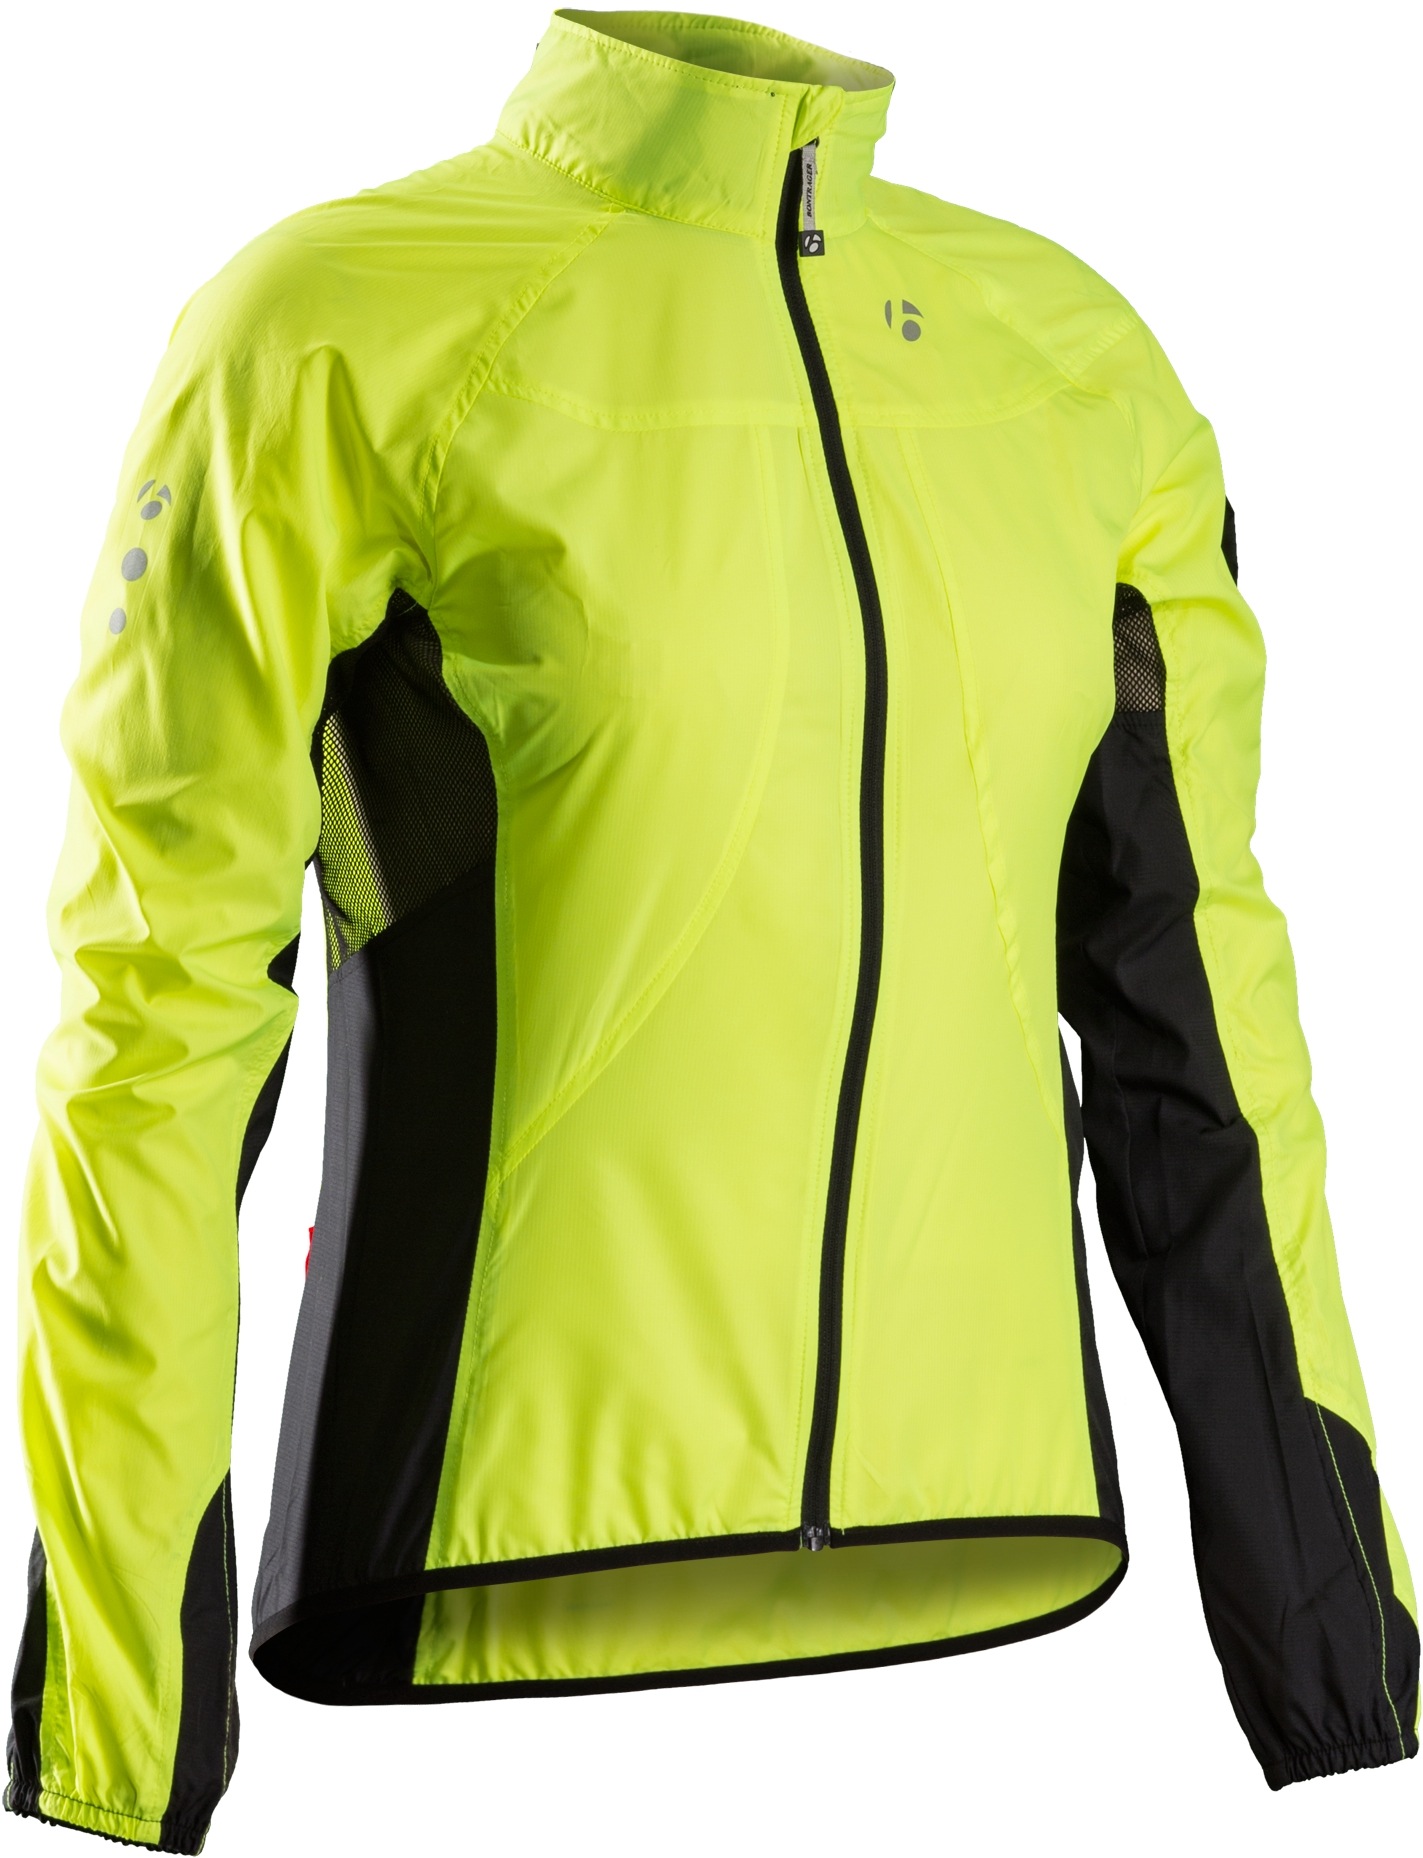 Bontrager Race Windshell Women's Jacket - Womens - Jackets - Clothing ...